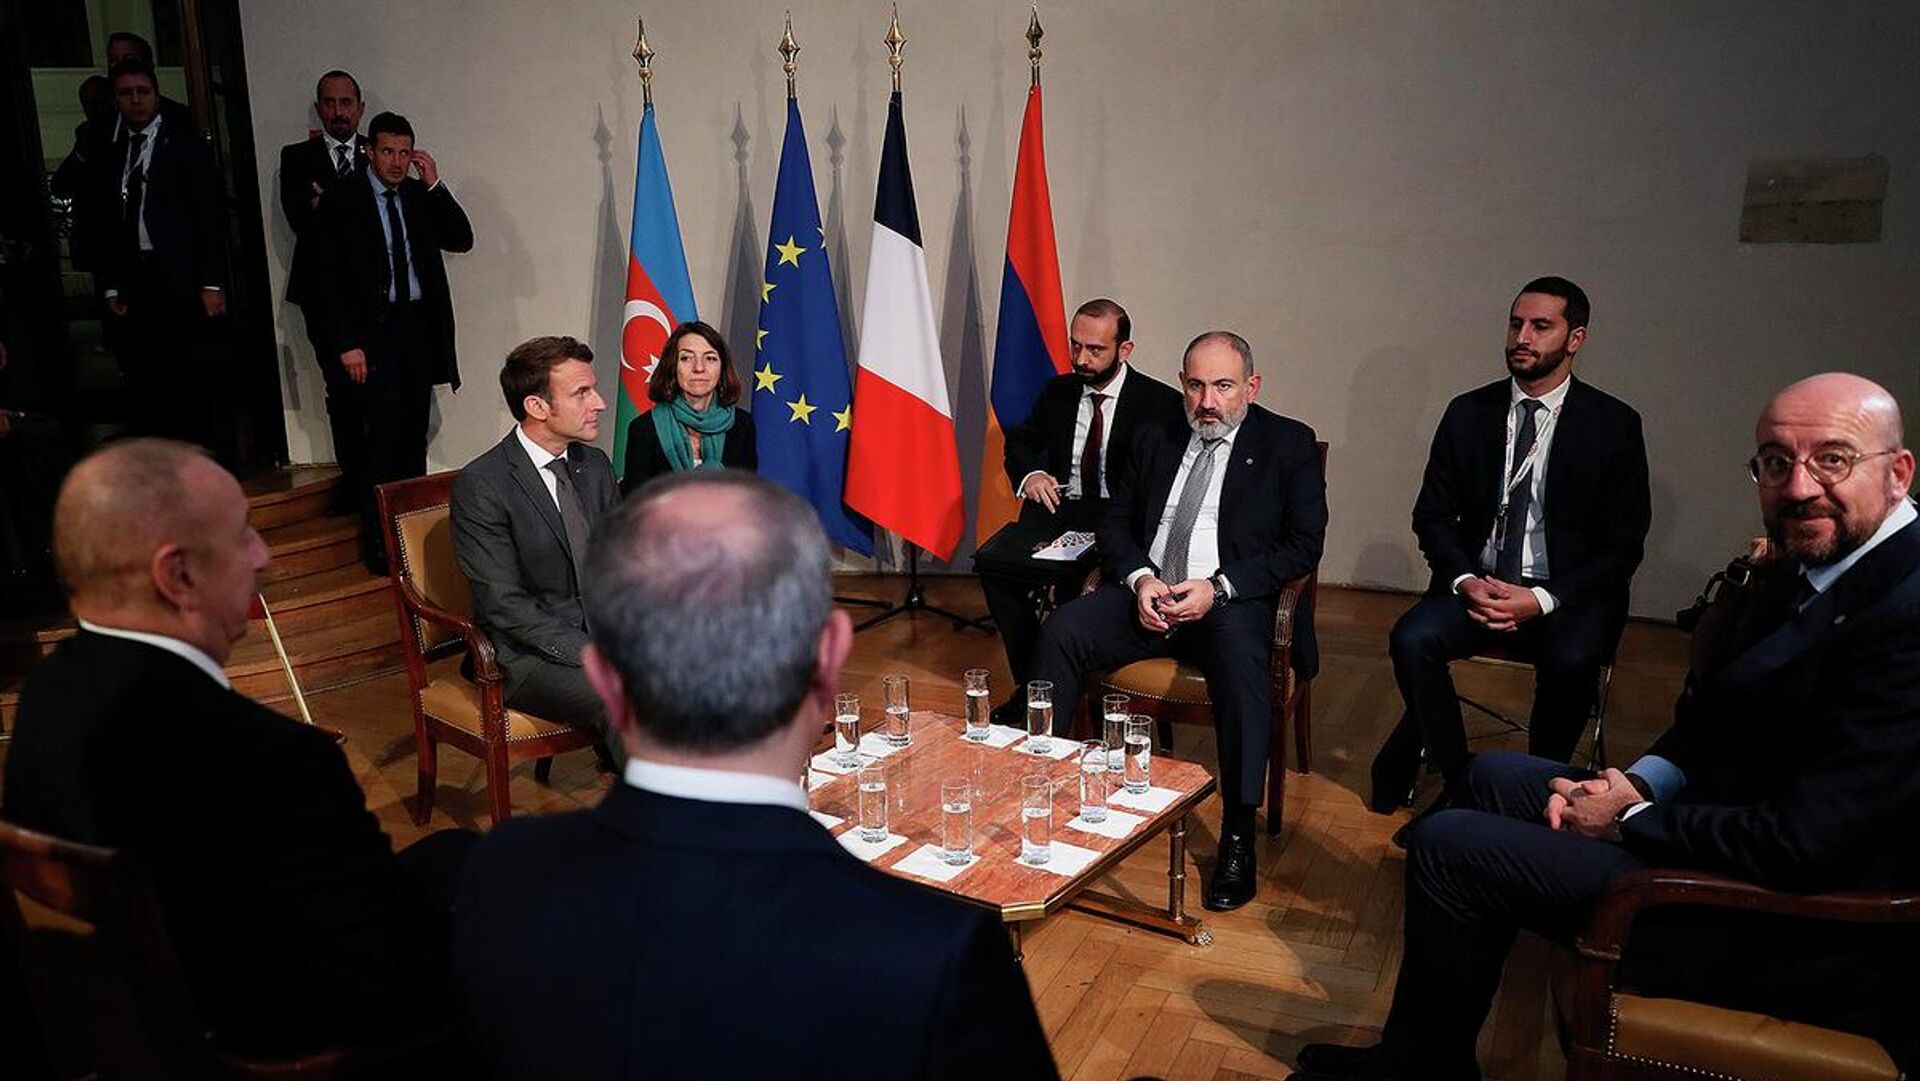 Վարչապետ Նիկոլ Փաշինյանի հանդիպումը Ադրբեջանի նախագահ Իլհամ Ալիևի հետ Ֆրանսիայի նախագահ Էմանուել Մակրոնի և ԵՄ նախագահ Շառլ Միշելի նախաձեռնությամբ - Sputnik Արմենիա, 1920, 02.11.2022